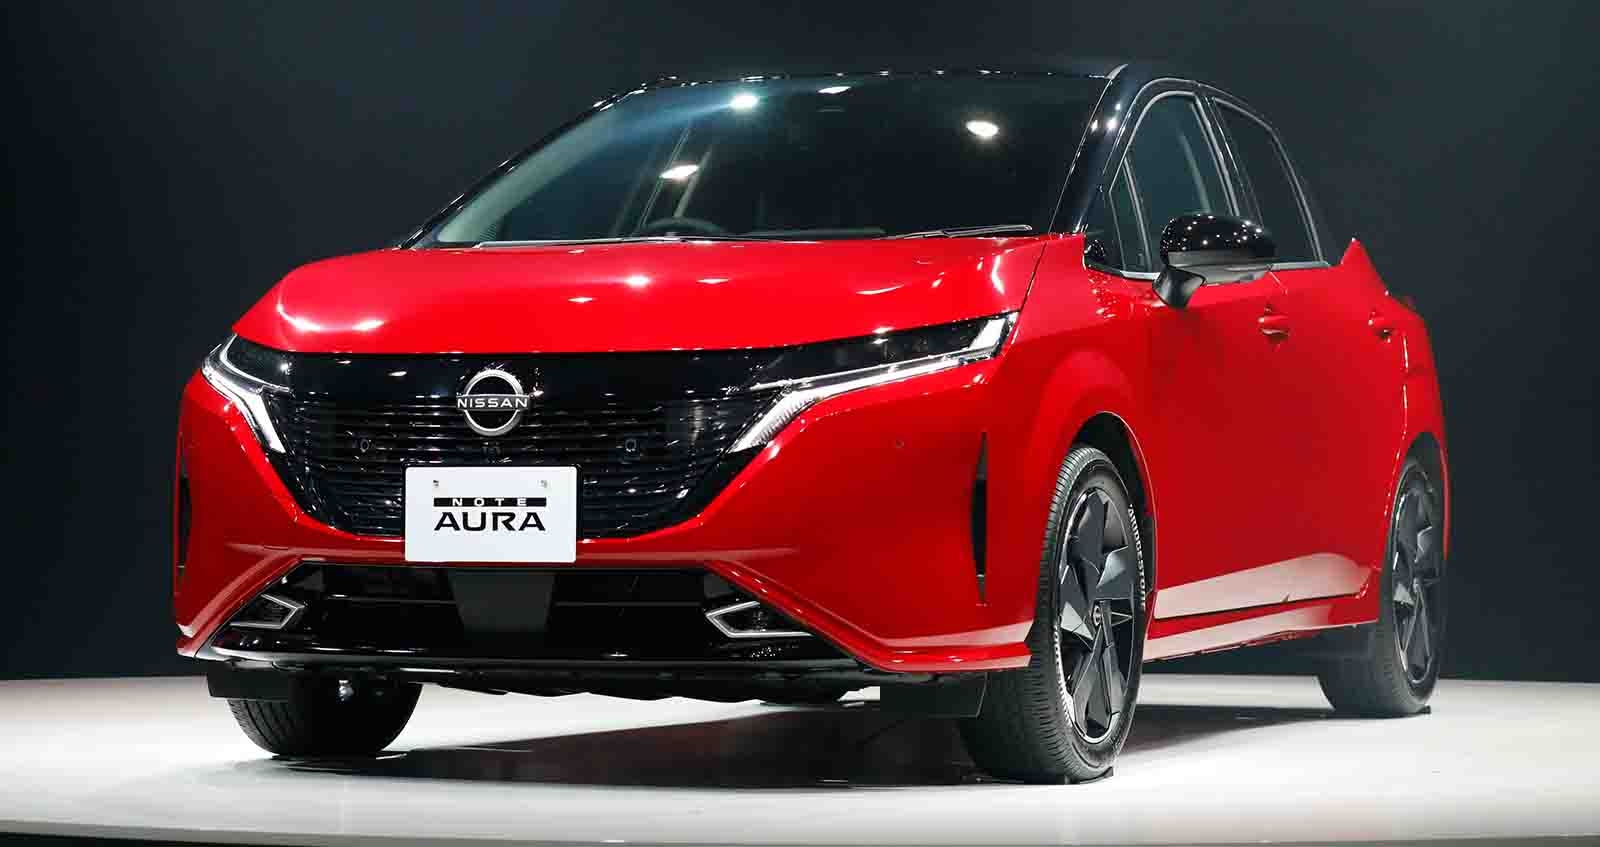 ภาพคันจริง New Nissan Note Aura e-POWER พิเศษกว่า ในญี่ปุ่น ราคา 737,000 บาท